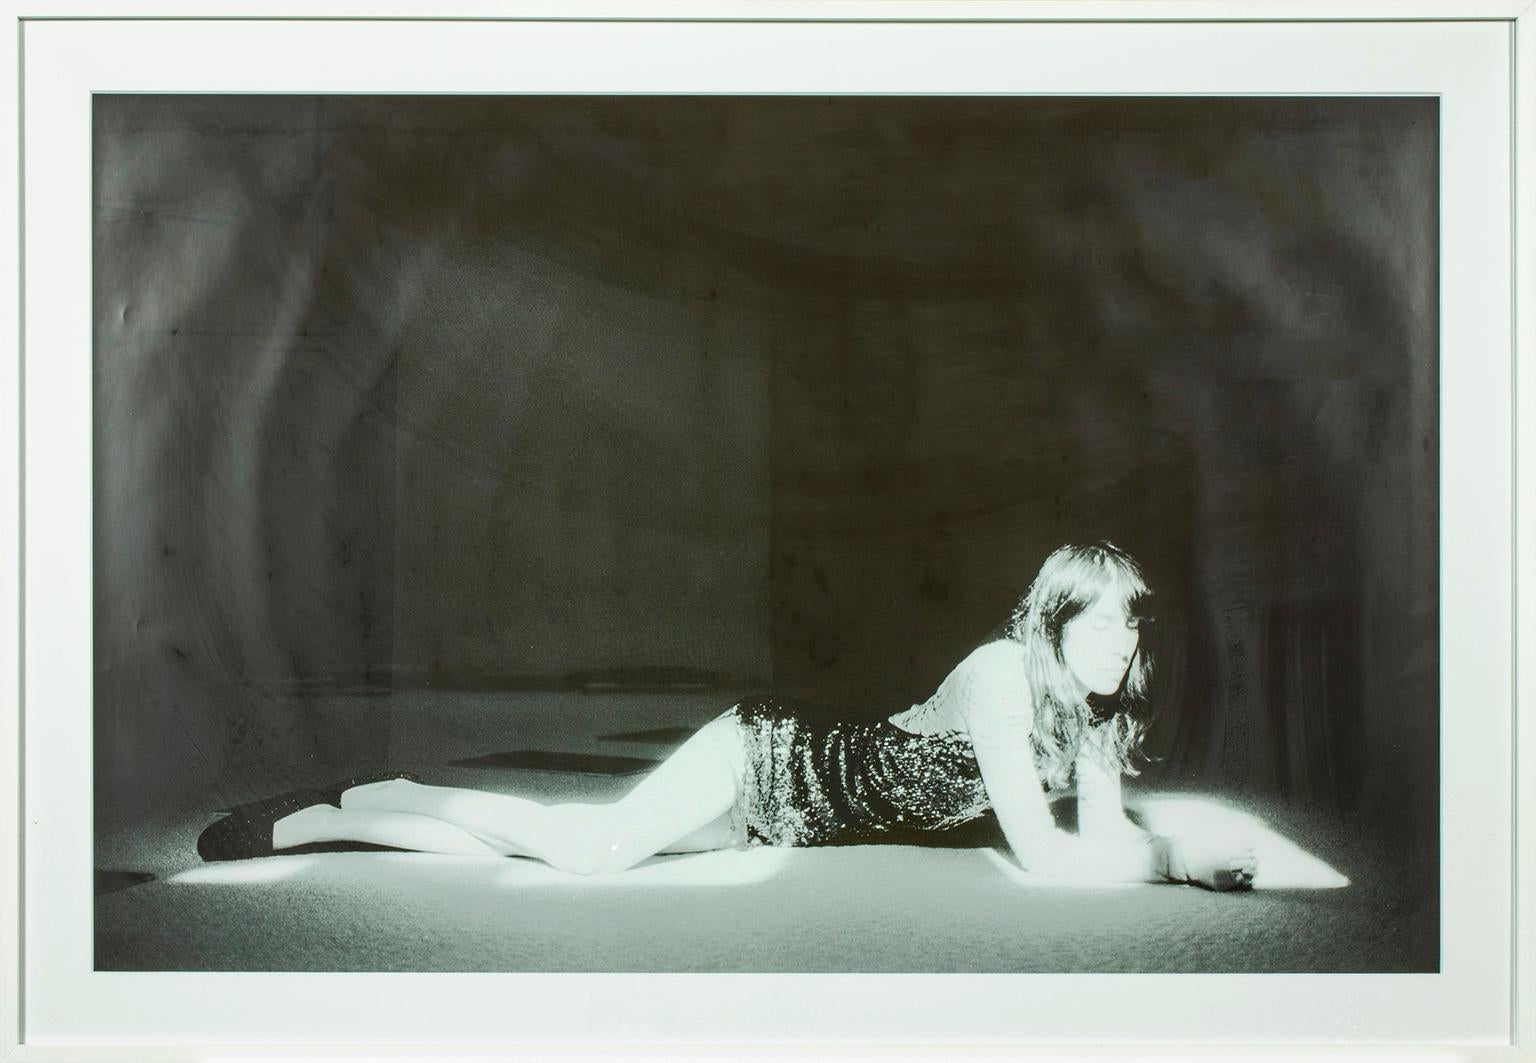 "Bleary" 35MM Ilford schwarz-weiß Fotografie von Sofia Malamute, Kunst- und Modefotografin. Foto des Models Jamie Bochert, aufgenommen für MAD Herbst/Winter 2014. Bildgröße 25 x 39 Zoll (63,5 x 99,1 cm). Aus einer Serie von 5.